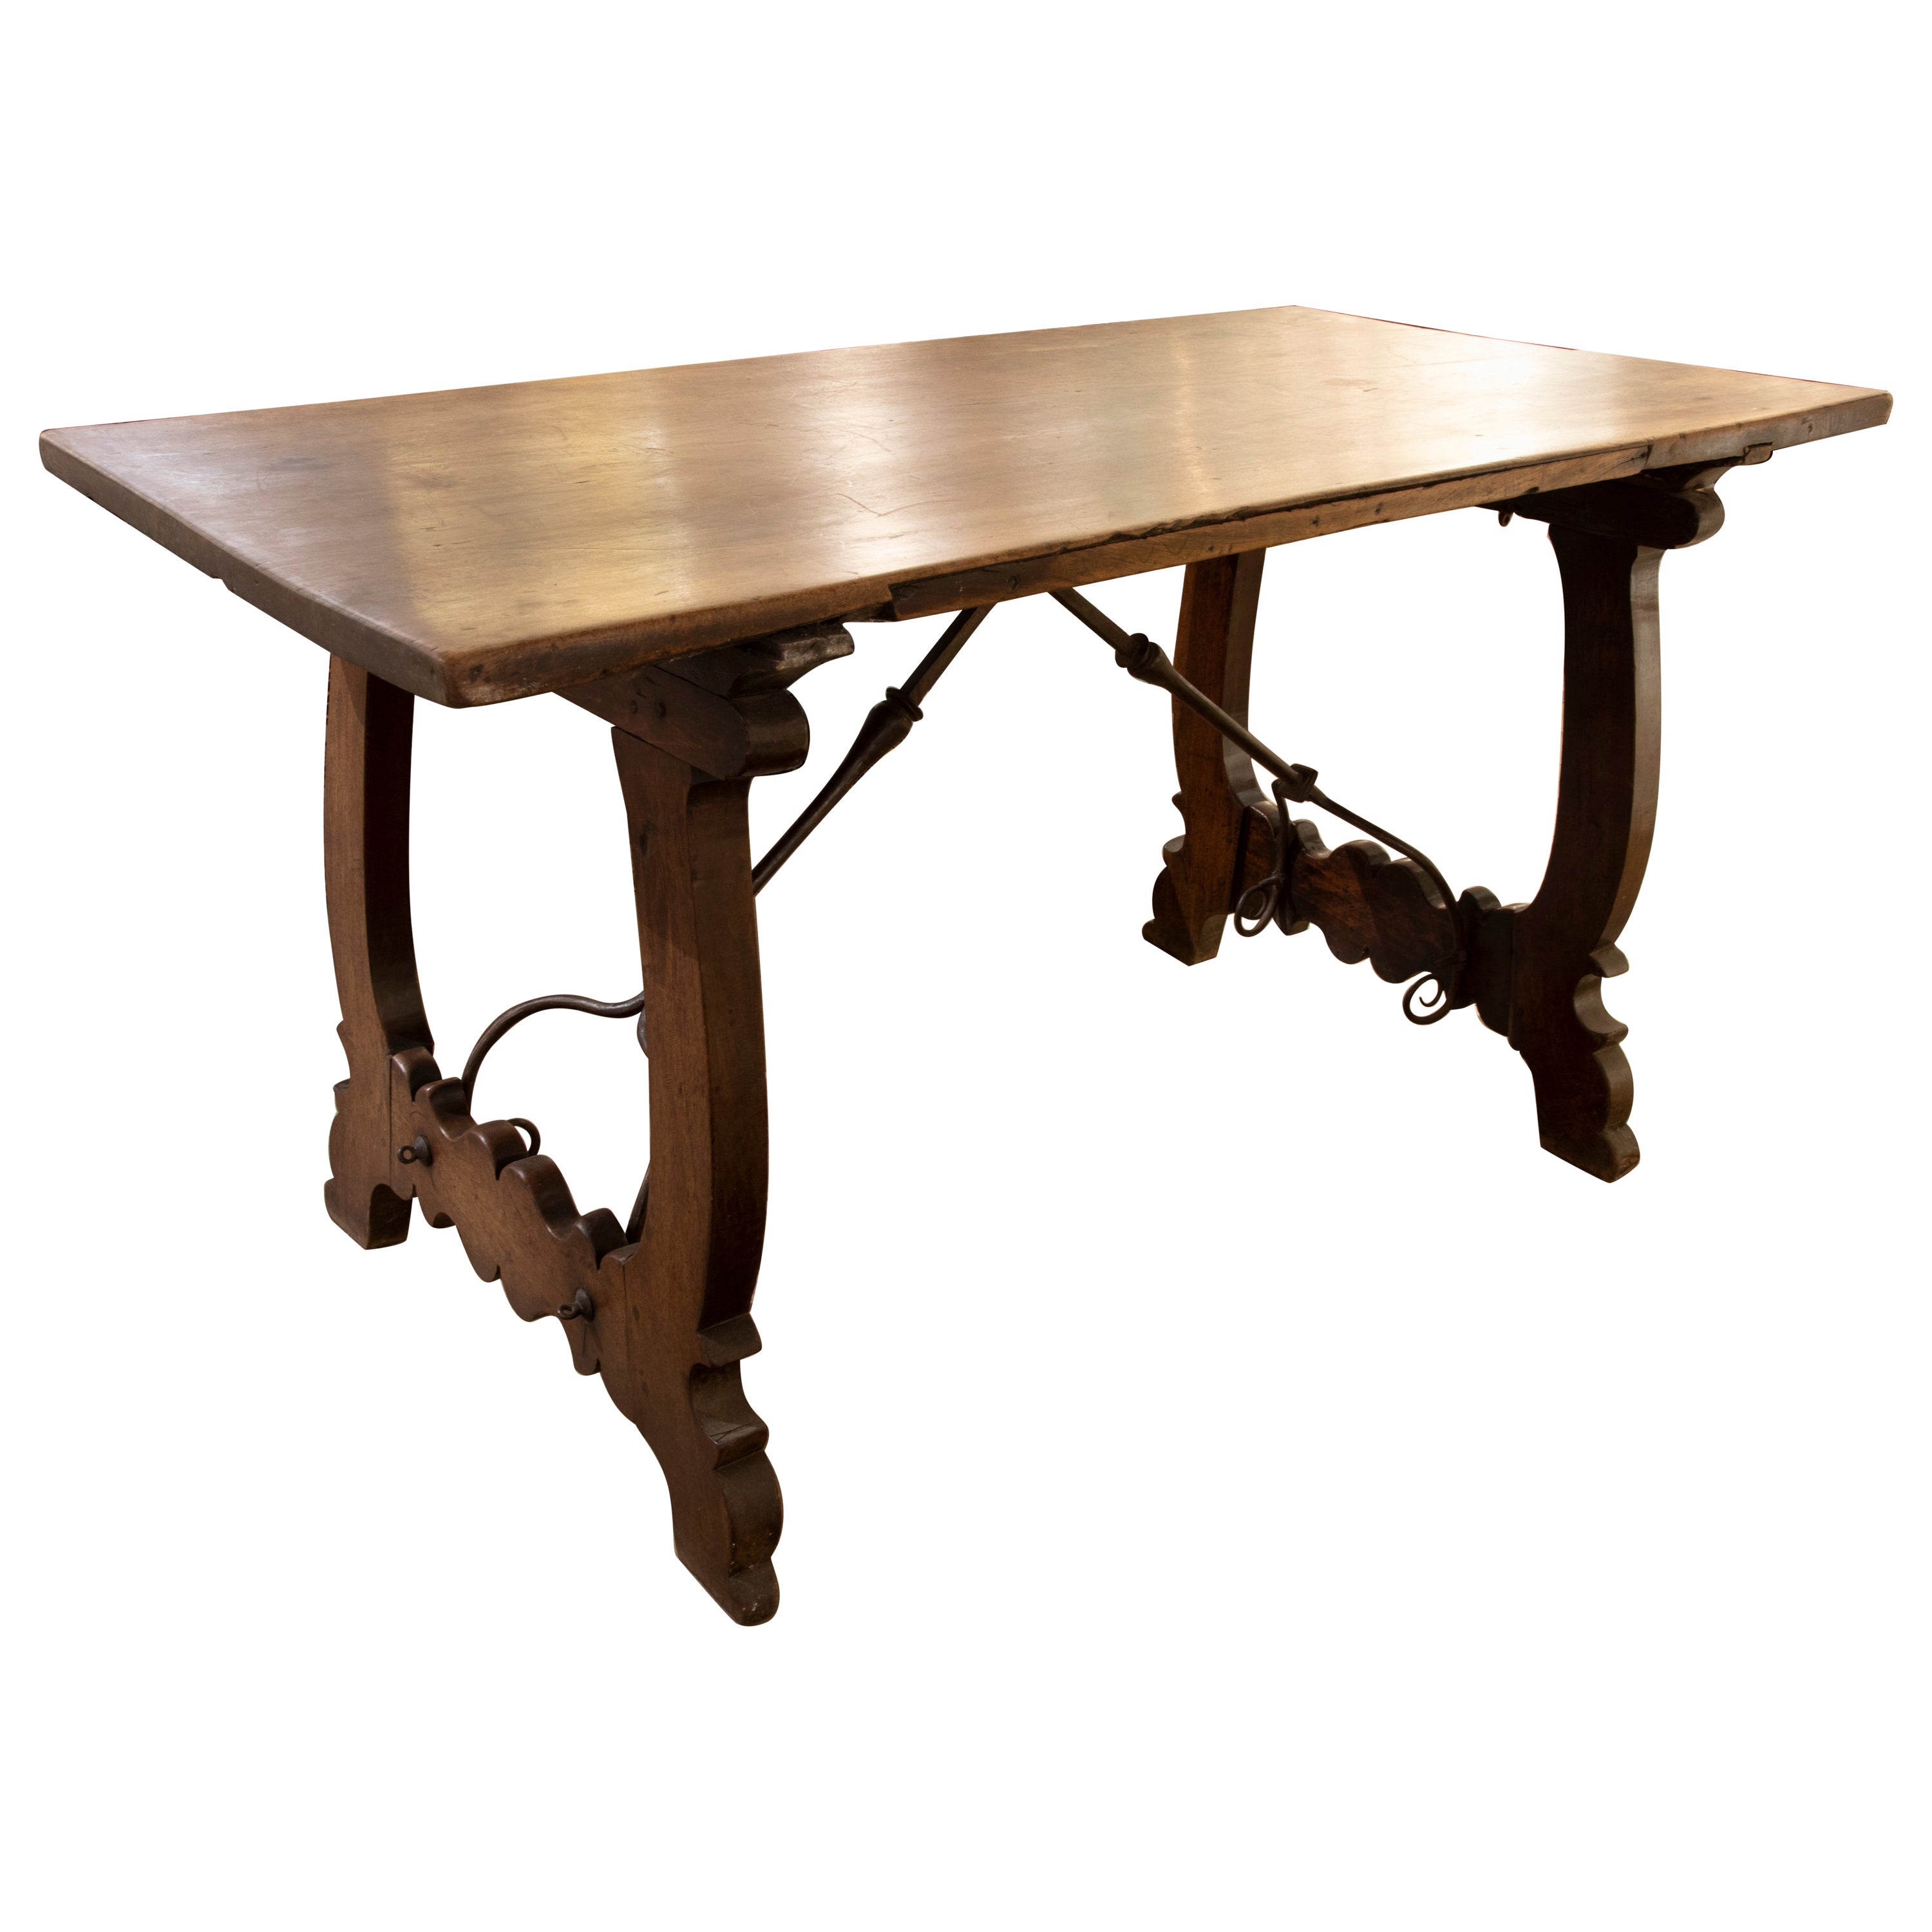 Spanischer Tisch aus Nussbaumholz mit Leierbeinen aus dem 18. Jahrhundert, verbunden mit Original-Eisen